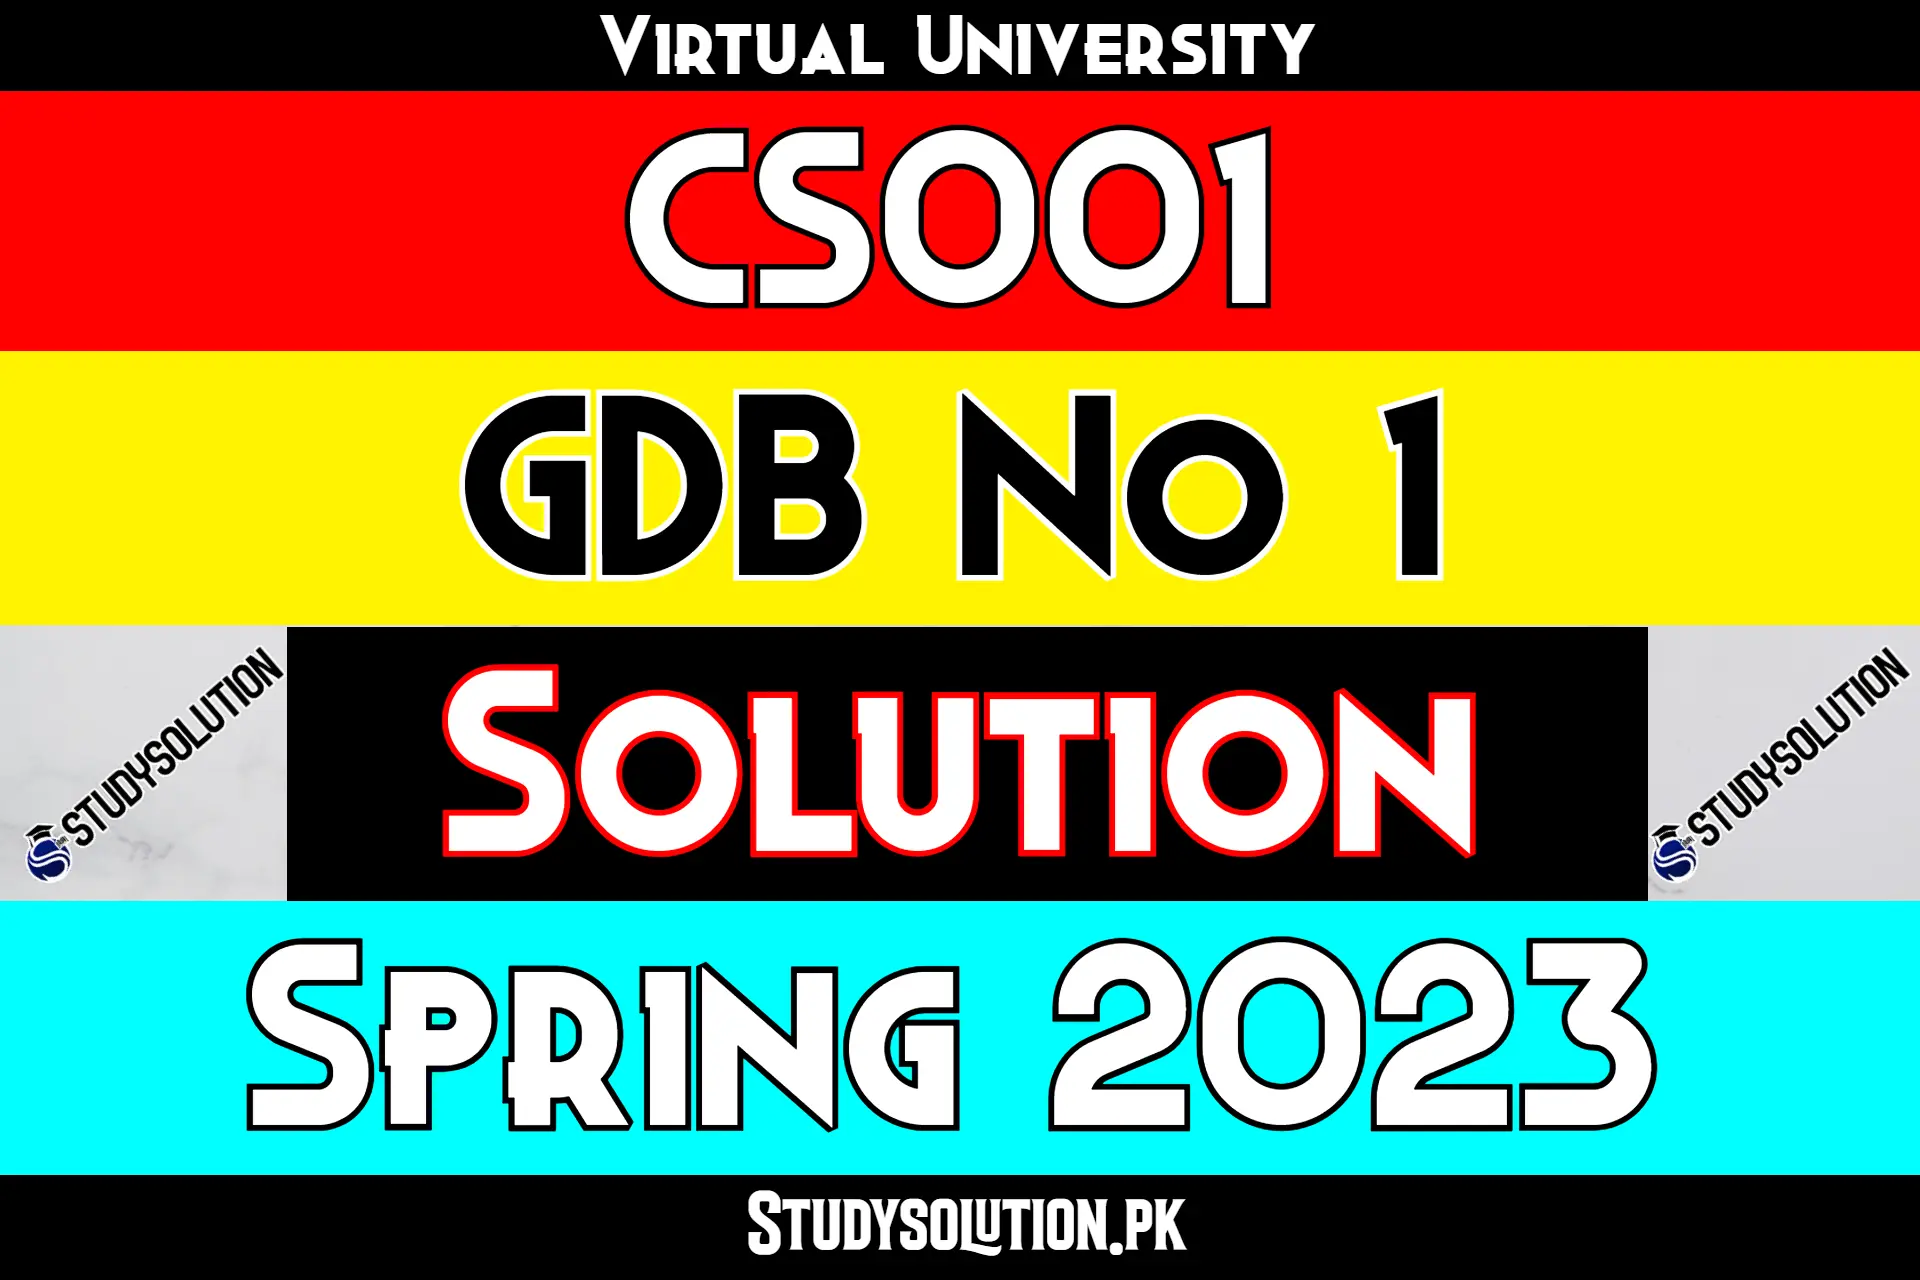 CS001 GDB No1 Solution Spring 2023